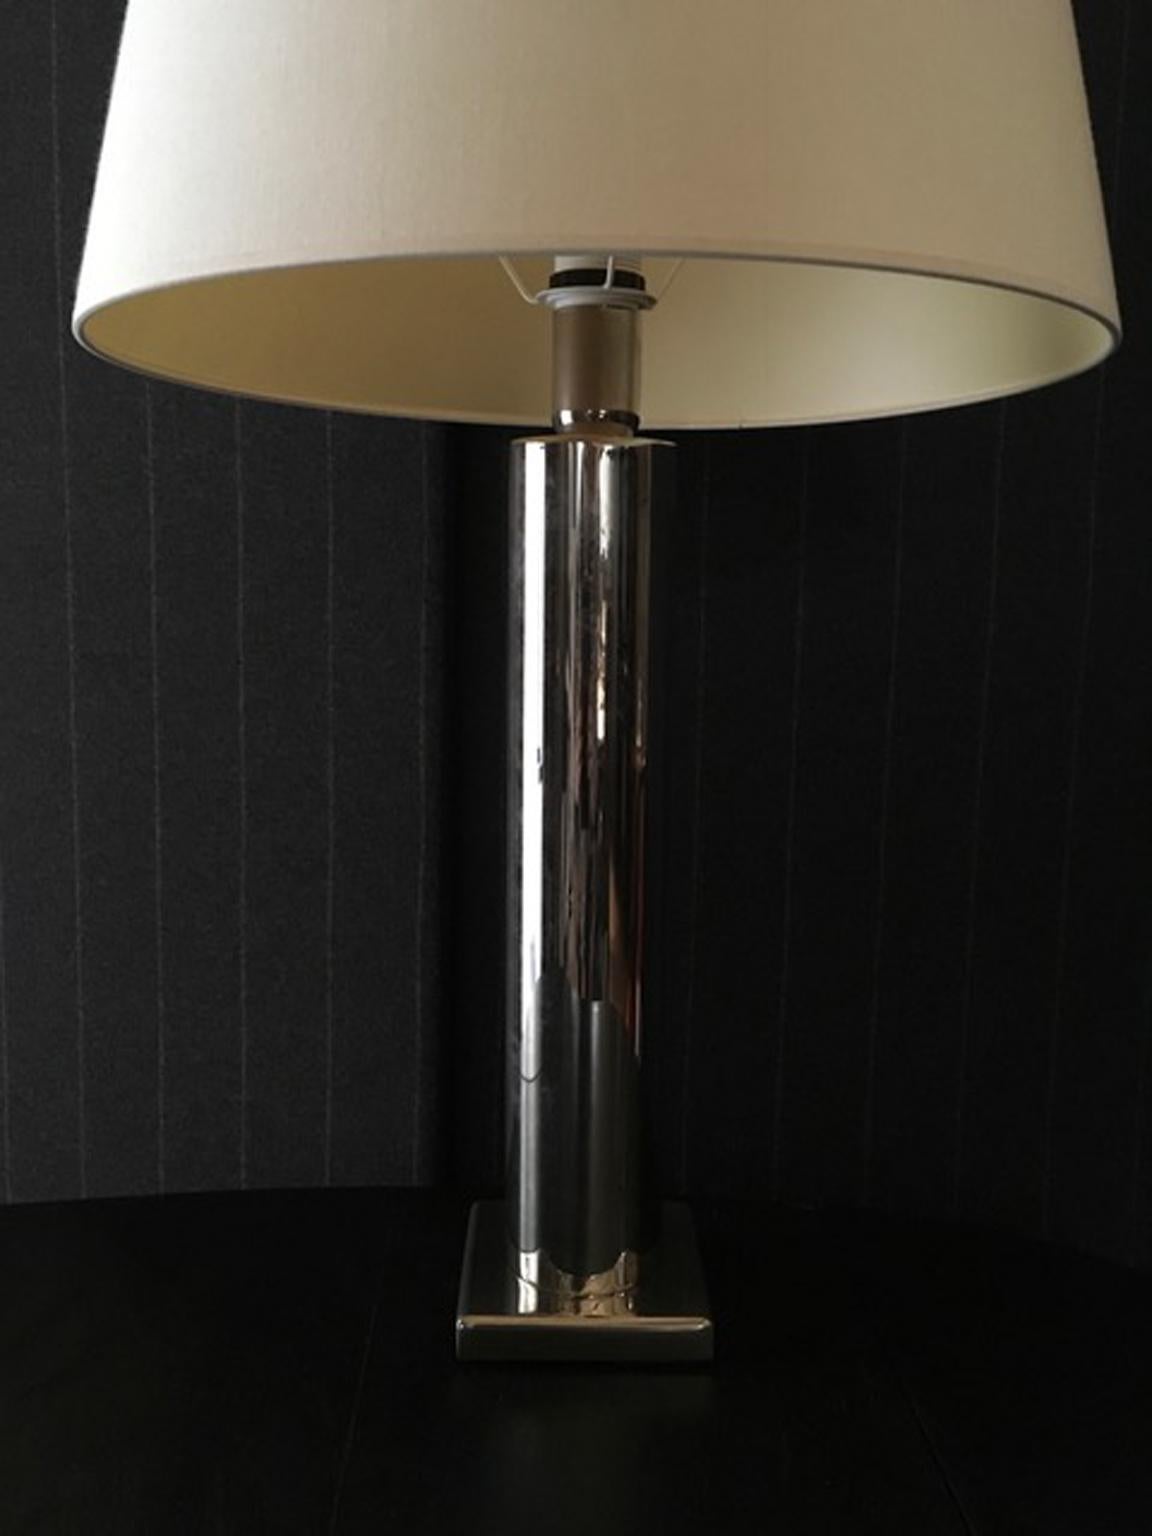 Lampe à poser contemporaine en métal chromé fabriquée en Italie, de style vintage et minimaliste.

Cette lampe de table de forme géométrique et linéaire dans un style minimaliste, est une production italienne contemporaine, réalisée avec la